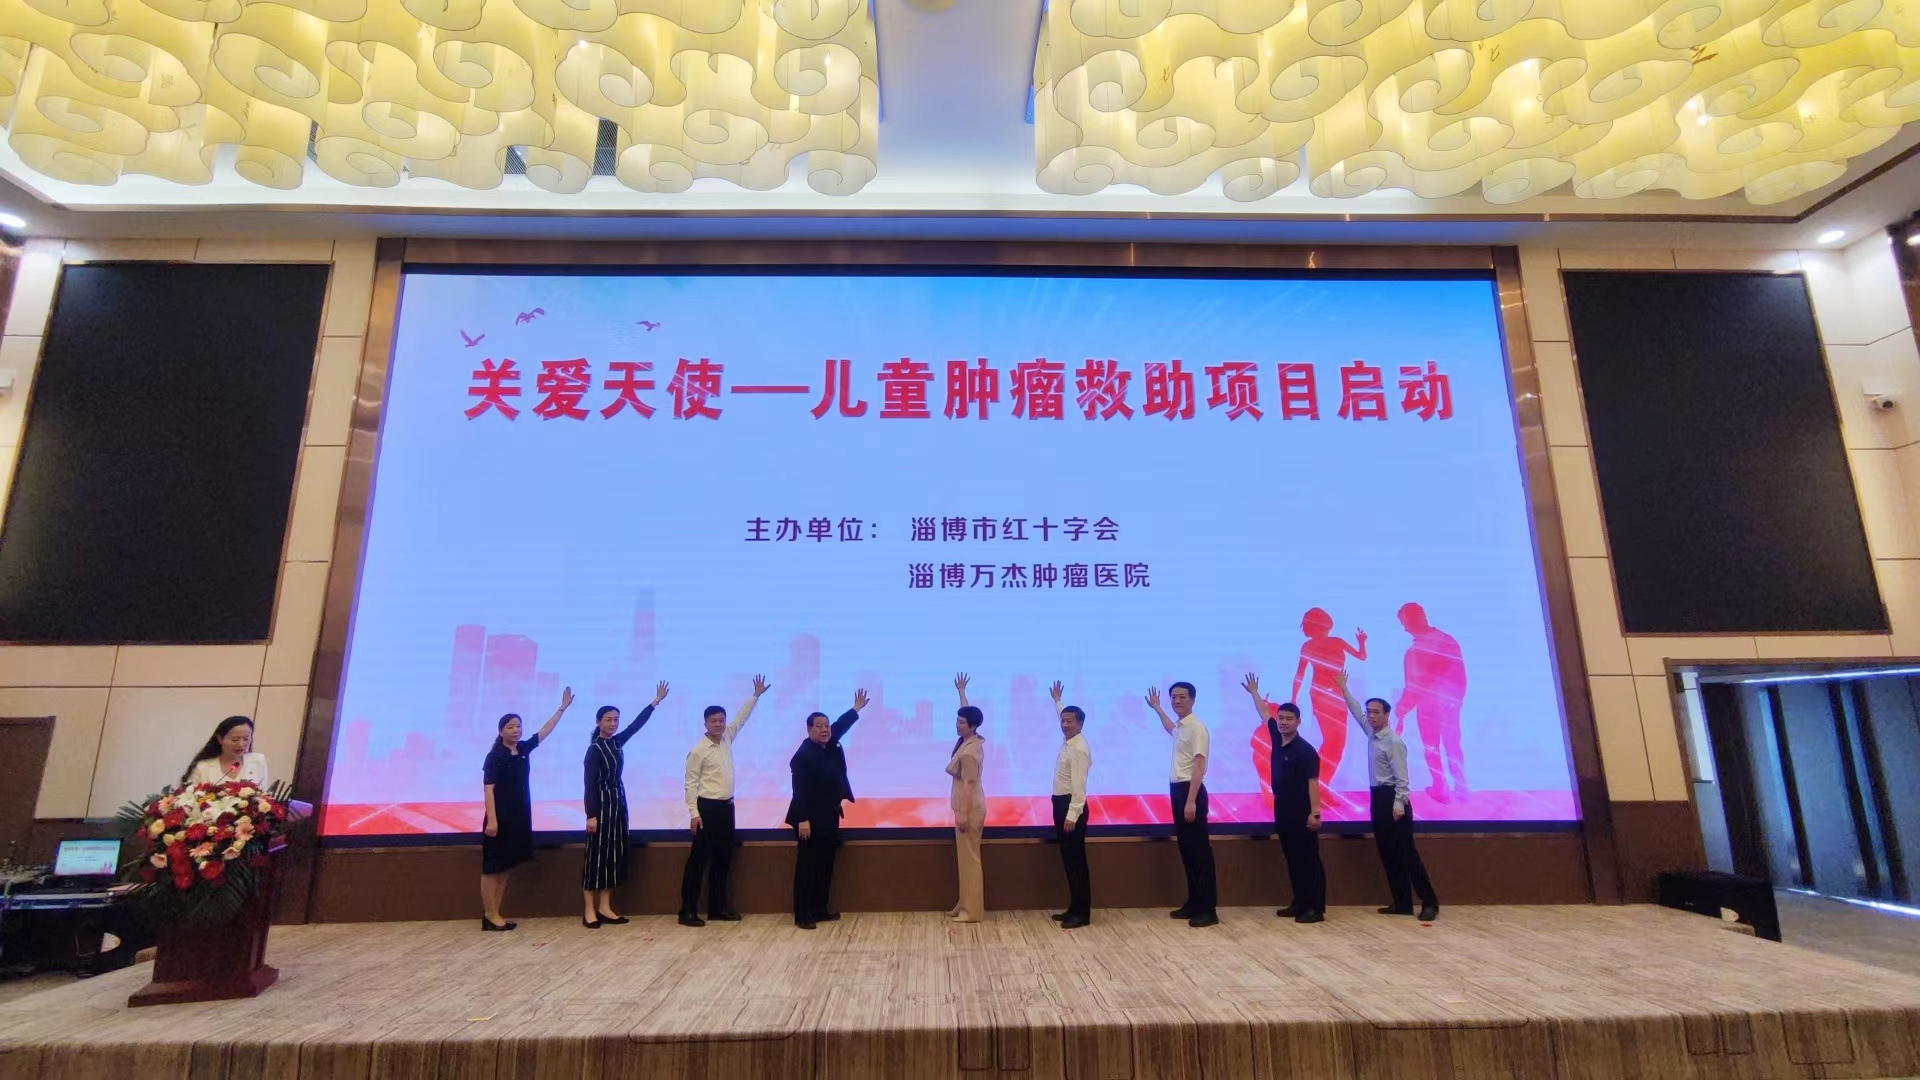 关爱天使——儿童肿瘤救助项目启动仪式在淄博万杰肿瘤医院举行